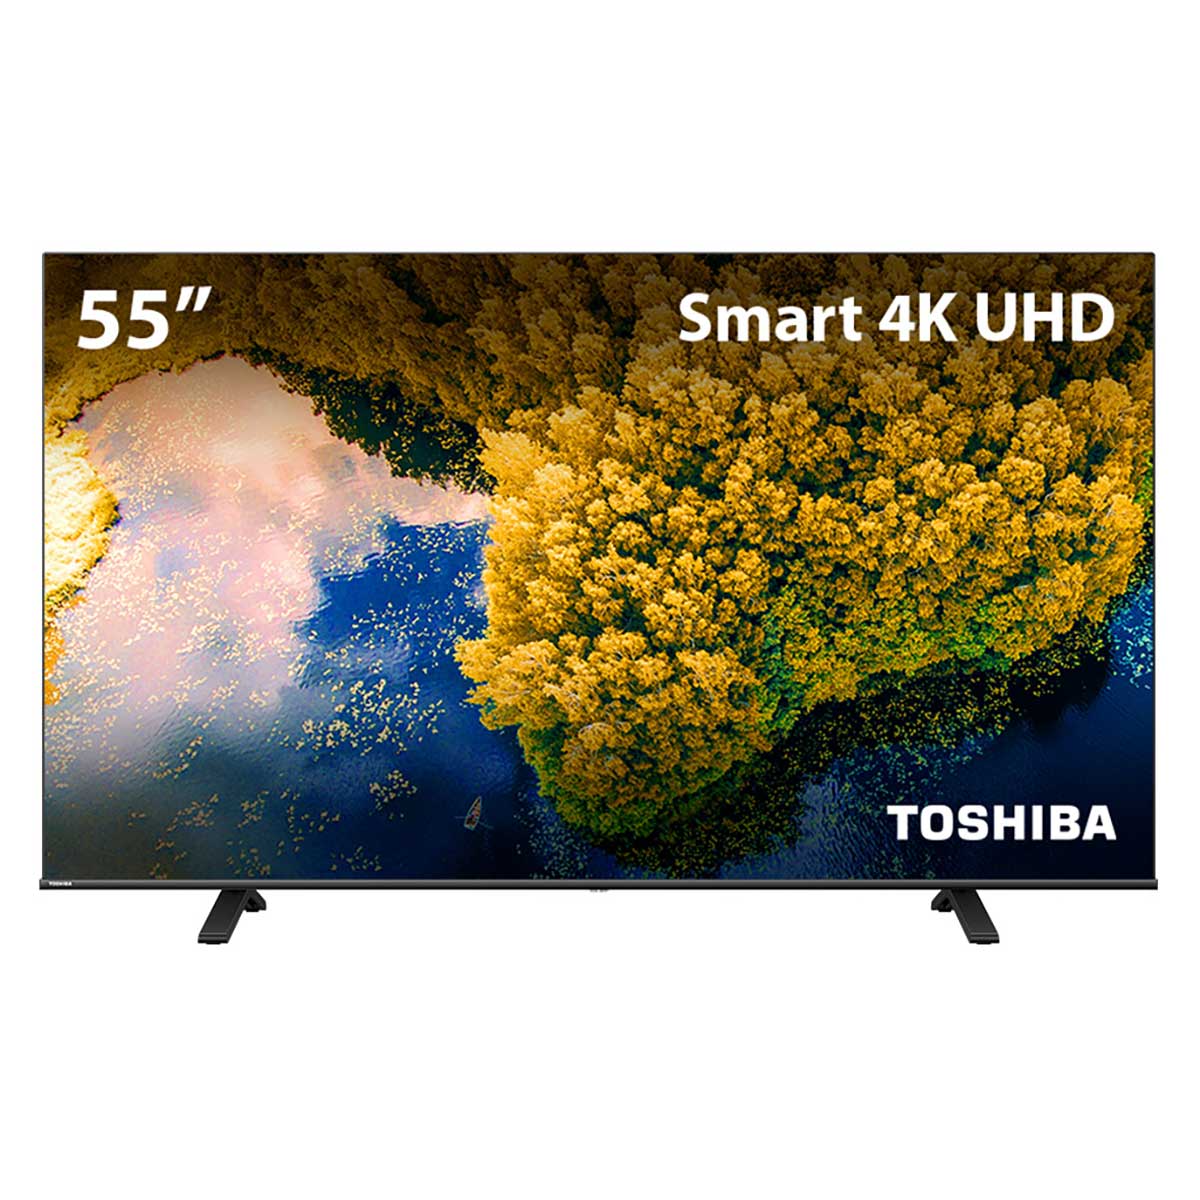 Smart TV DLED Toshiba 55'' 55C350LS 4K VIDAA 3 HDMI 2 USB Wi-Fi - TB011M